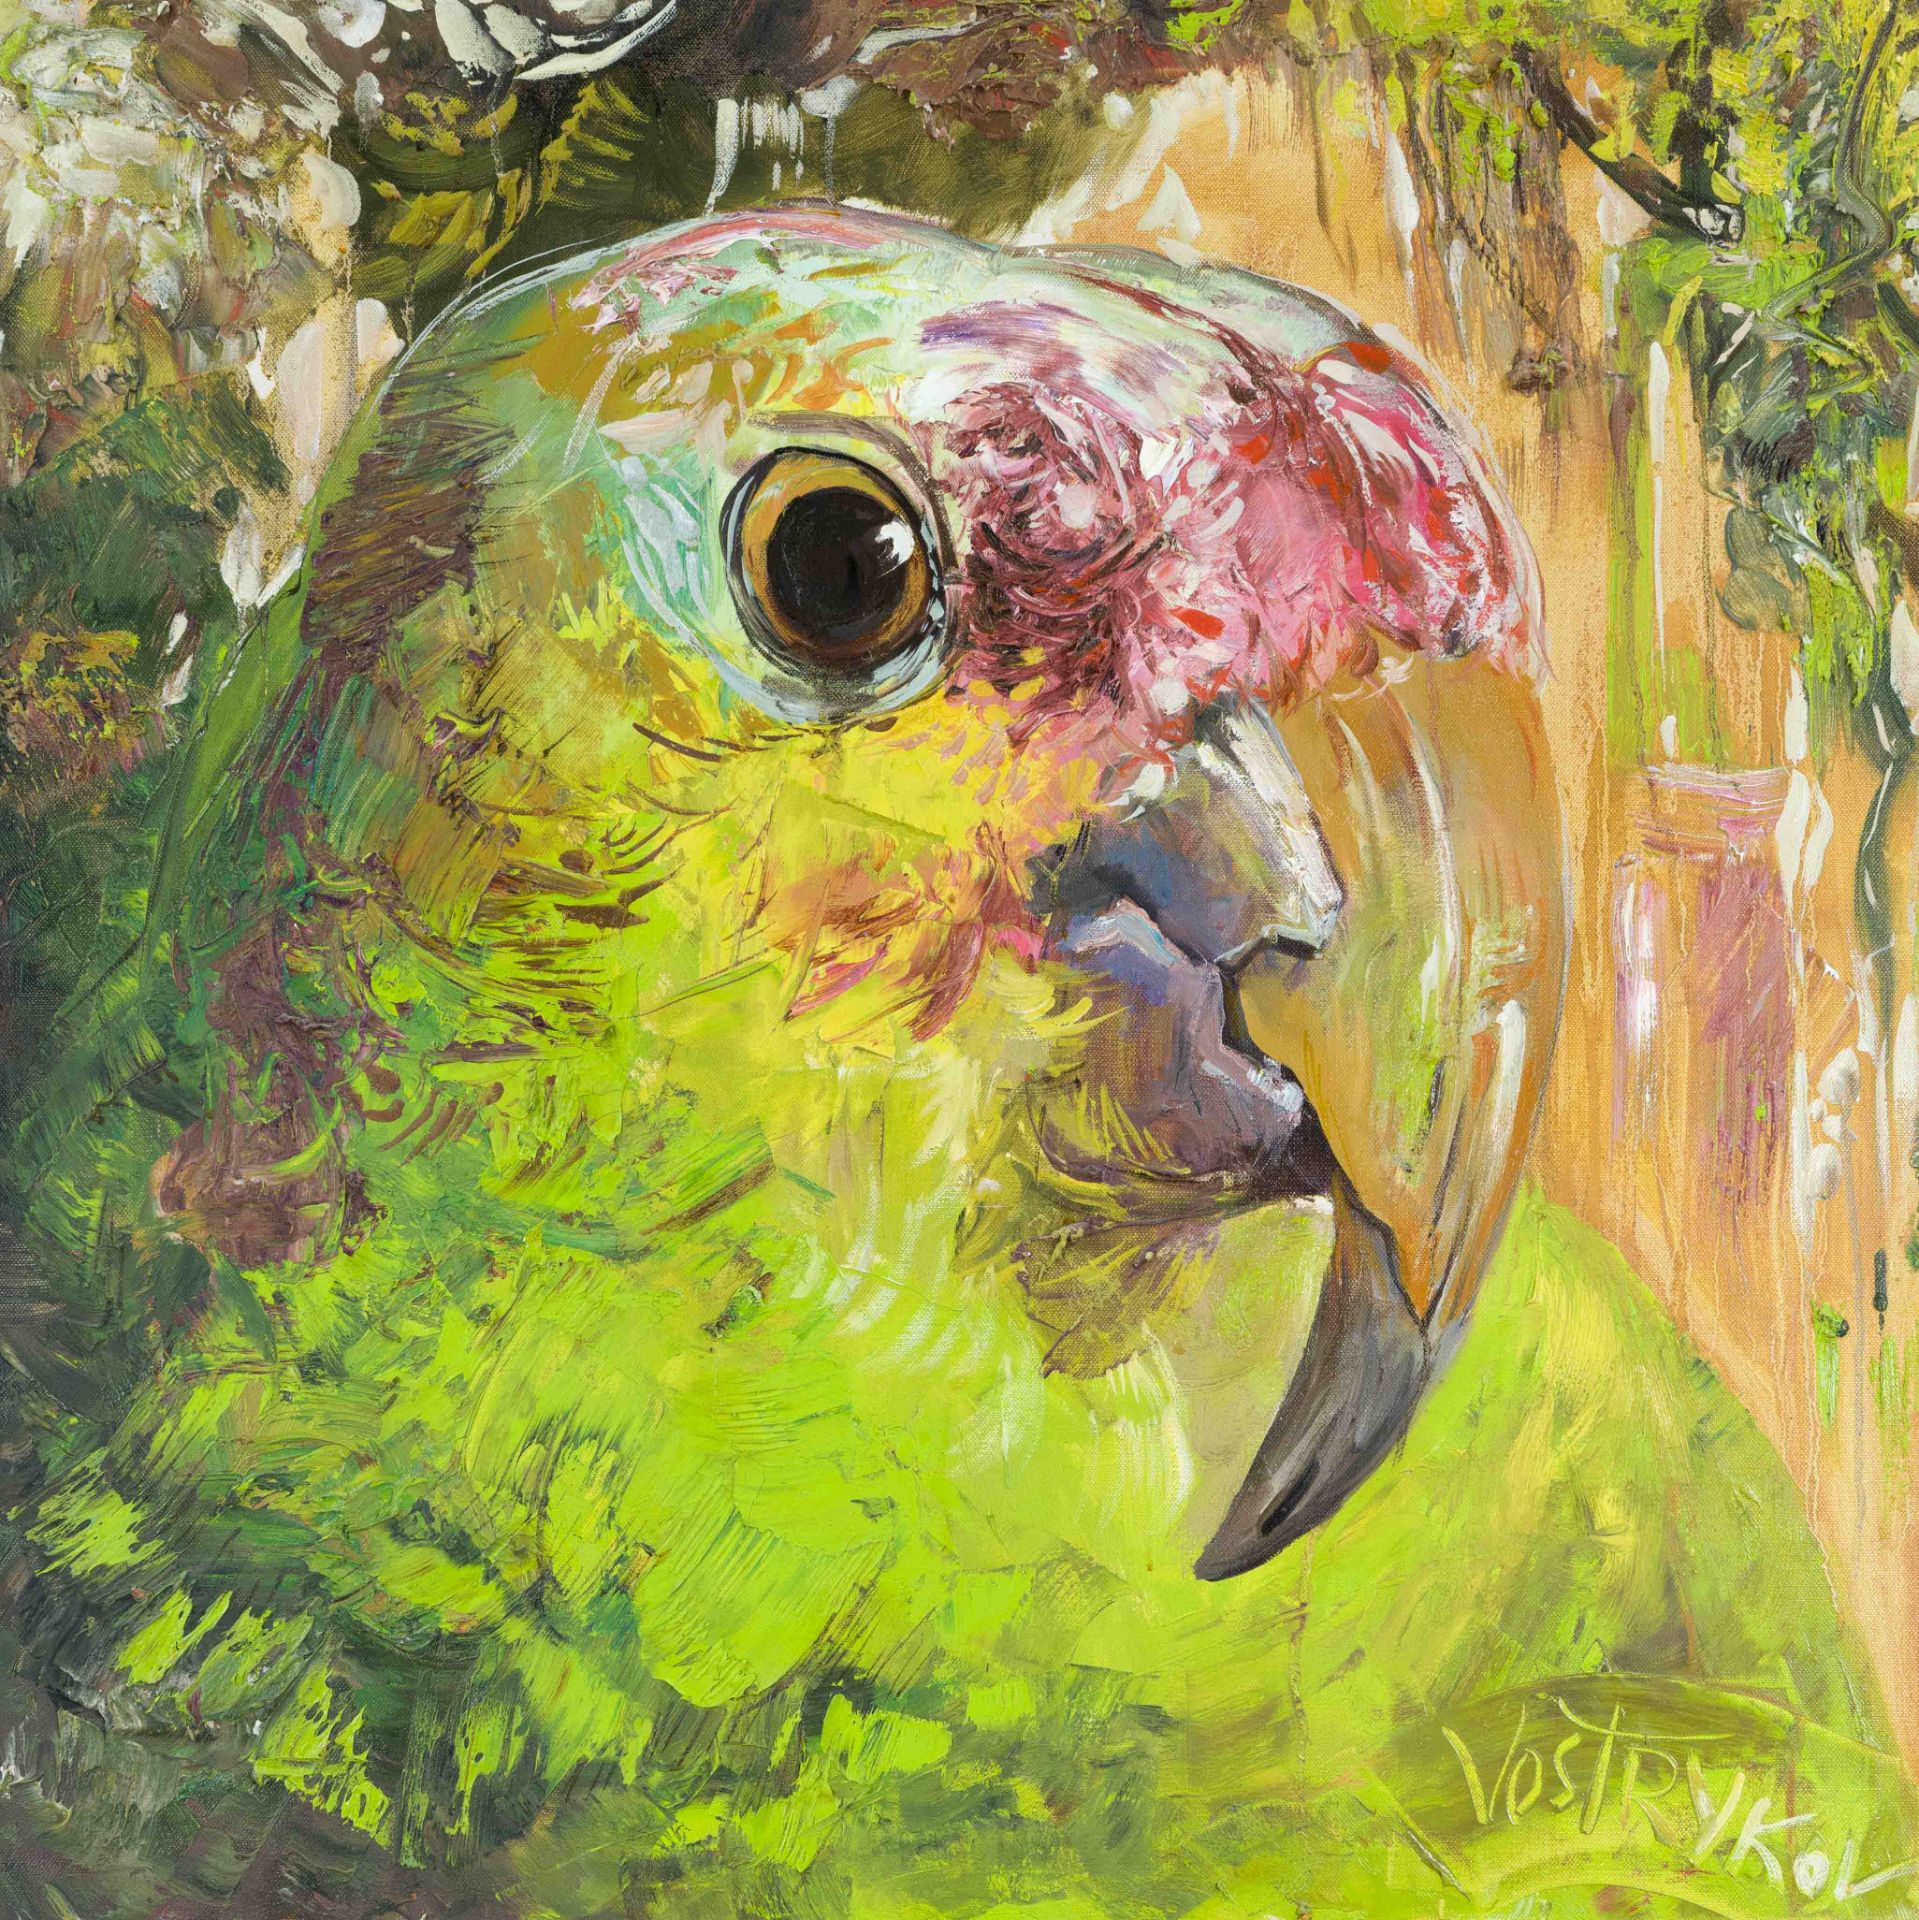 Vasyl Vostryakov, contemporary Ukrainian artist from Kiev, active in Berlin, head of a parrot, oil